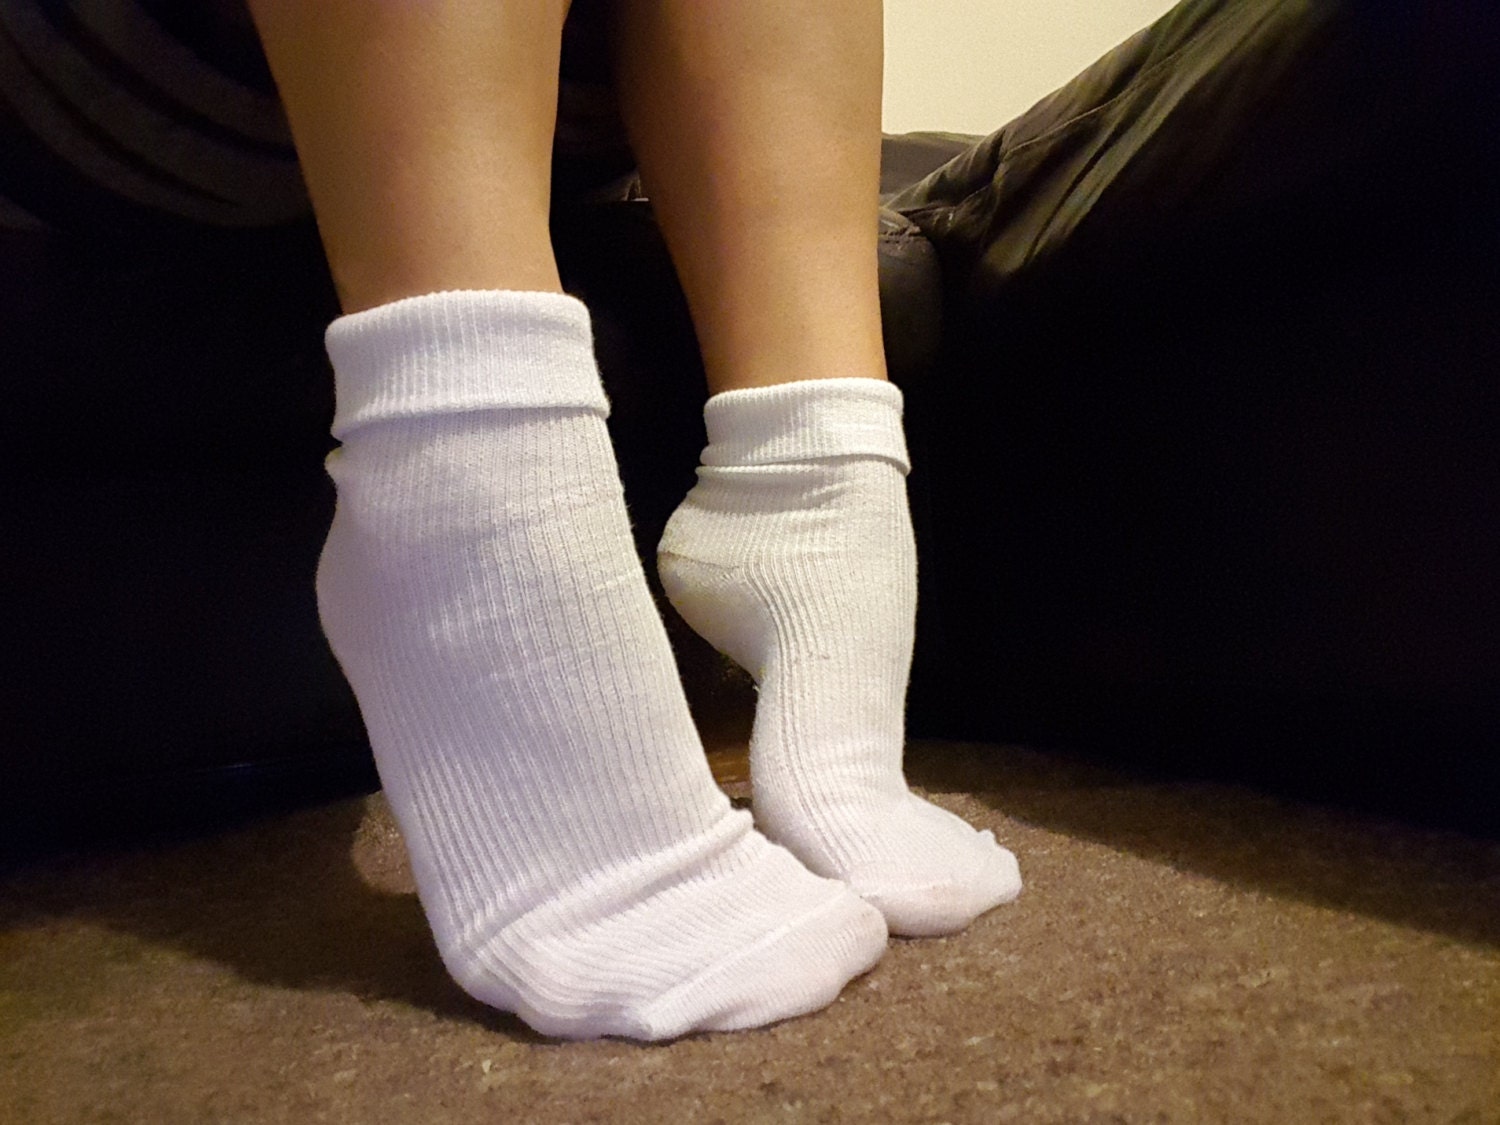 White Ankle Socks worn used